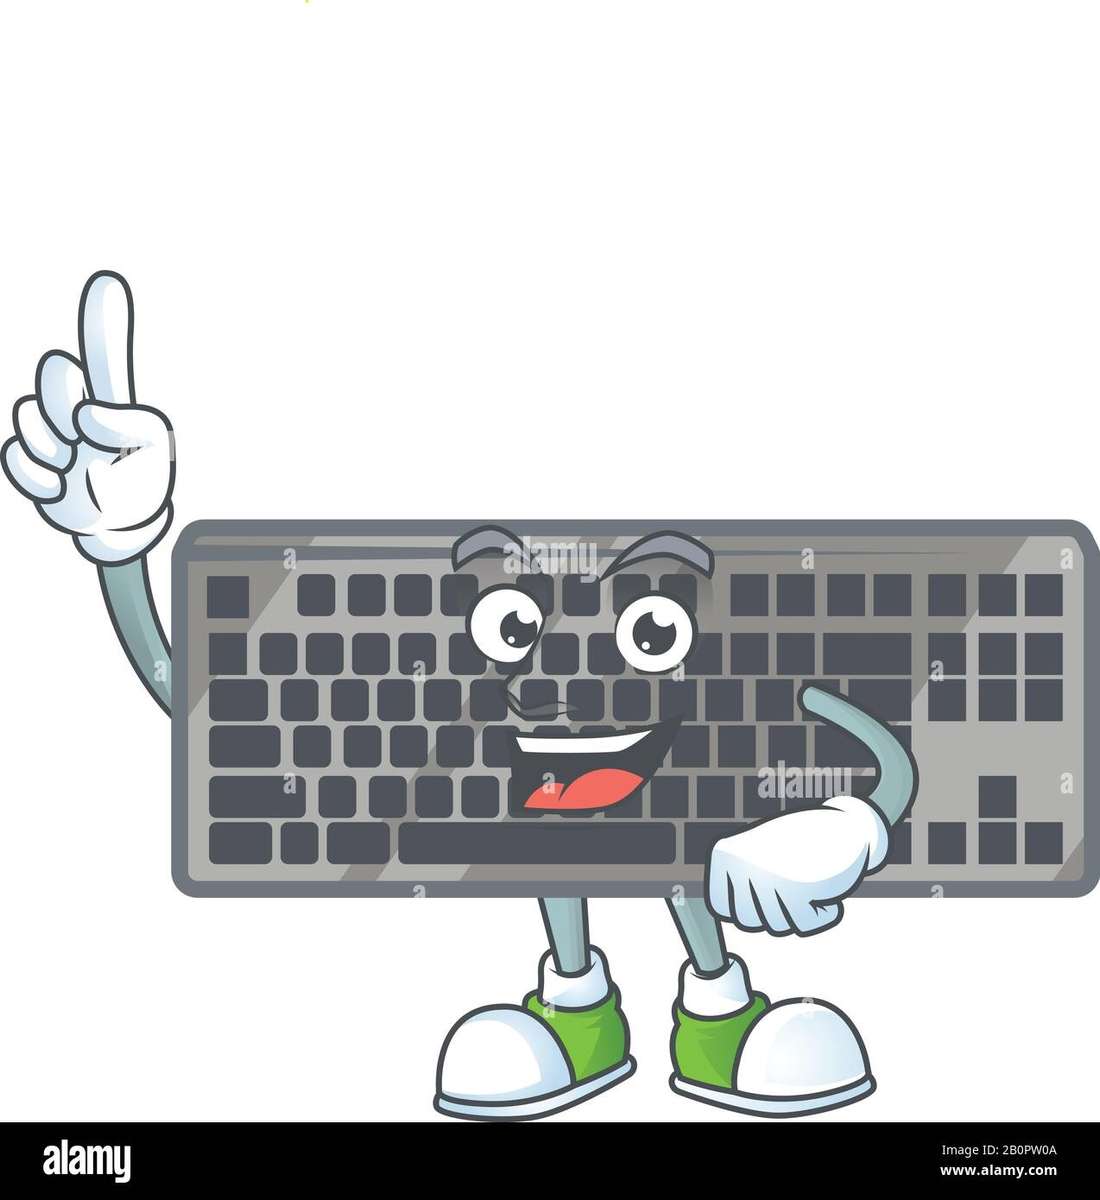 klávesnice pro dětské počítačové díly online puzzle